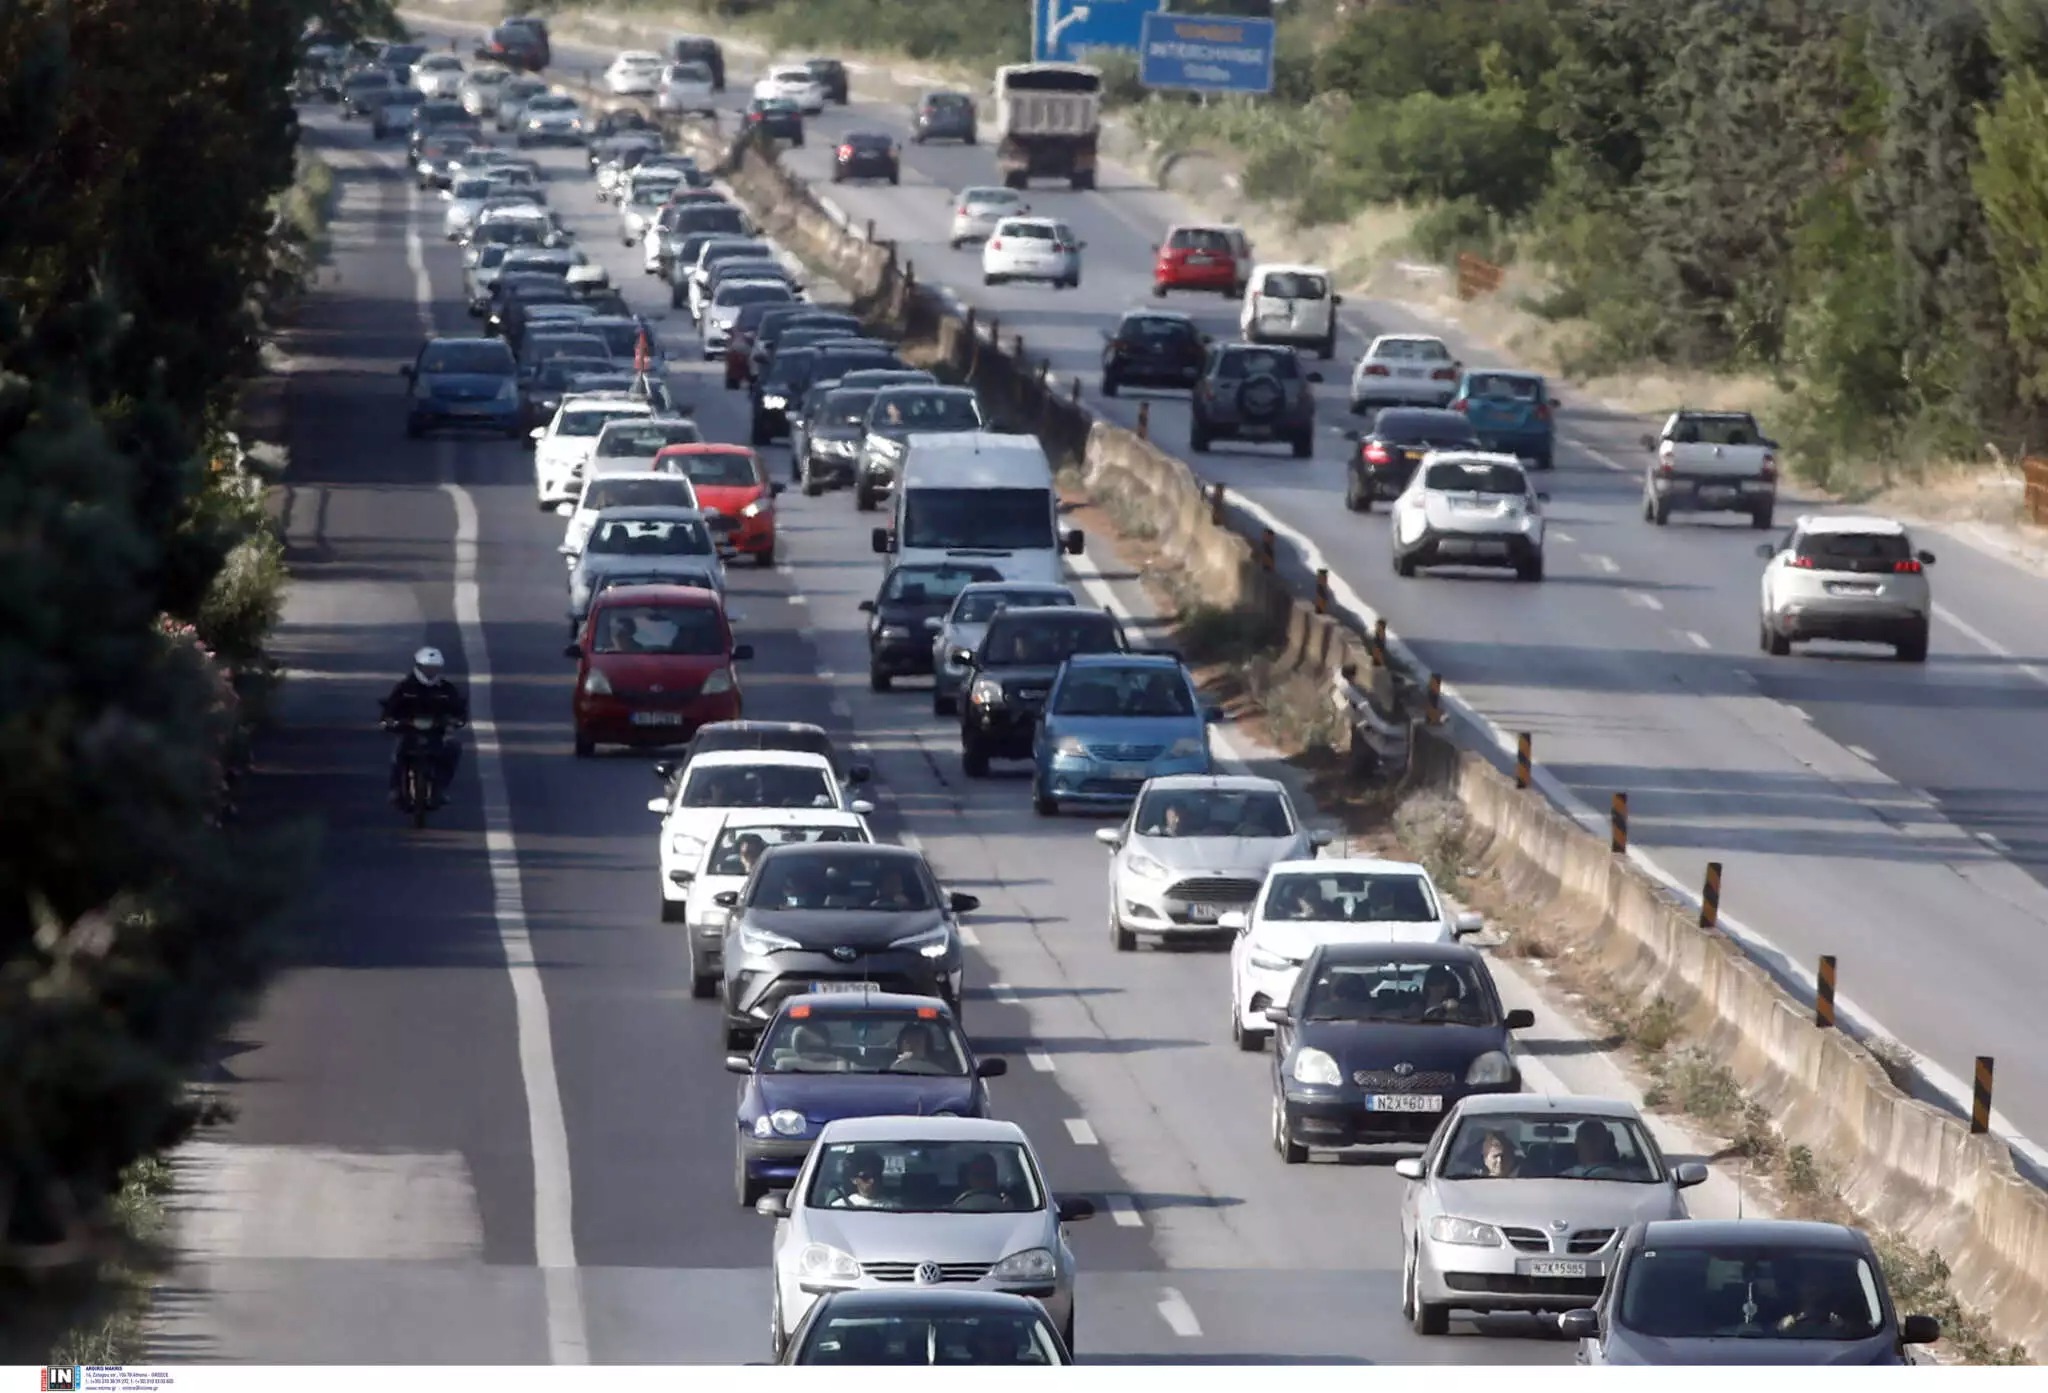 Κίνηση στους δρόμους: Σοβαρό τροχαίο στην Αθηνών – Σουνίου, πού υπάρχουν καθυστερήσεις